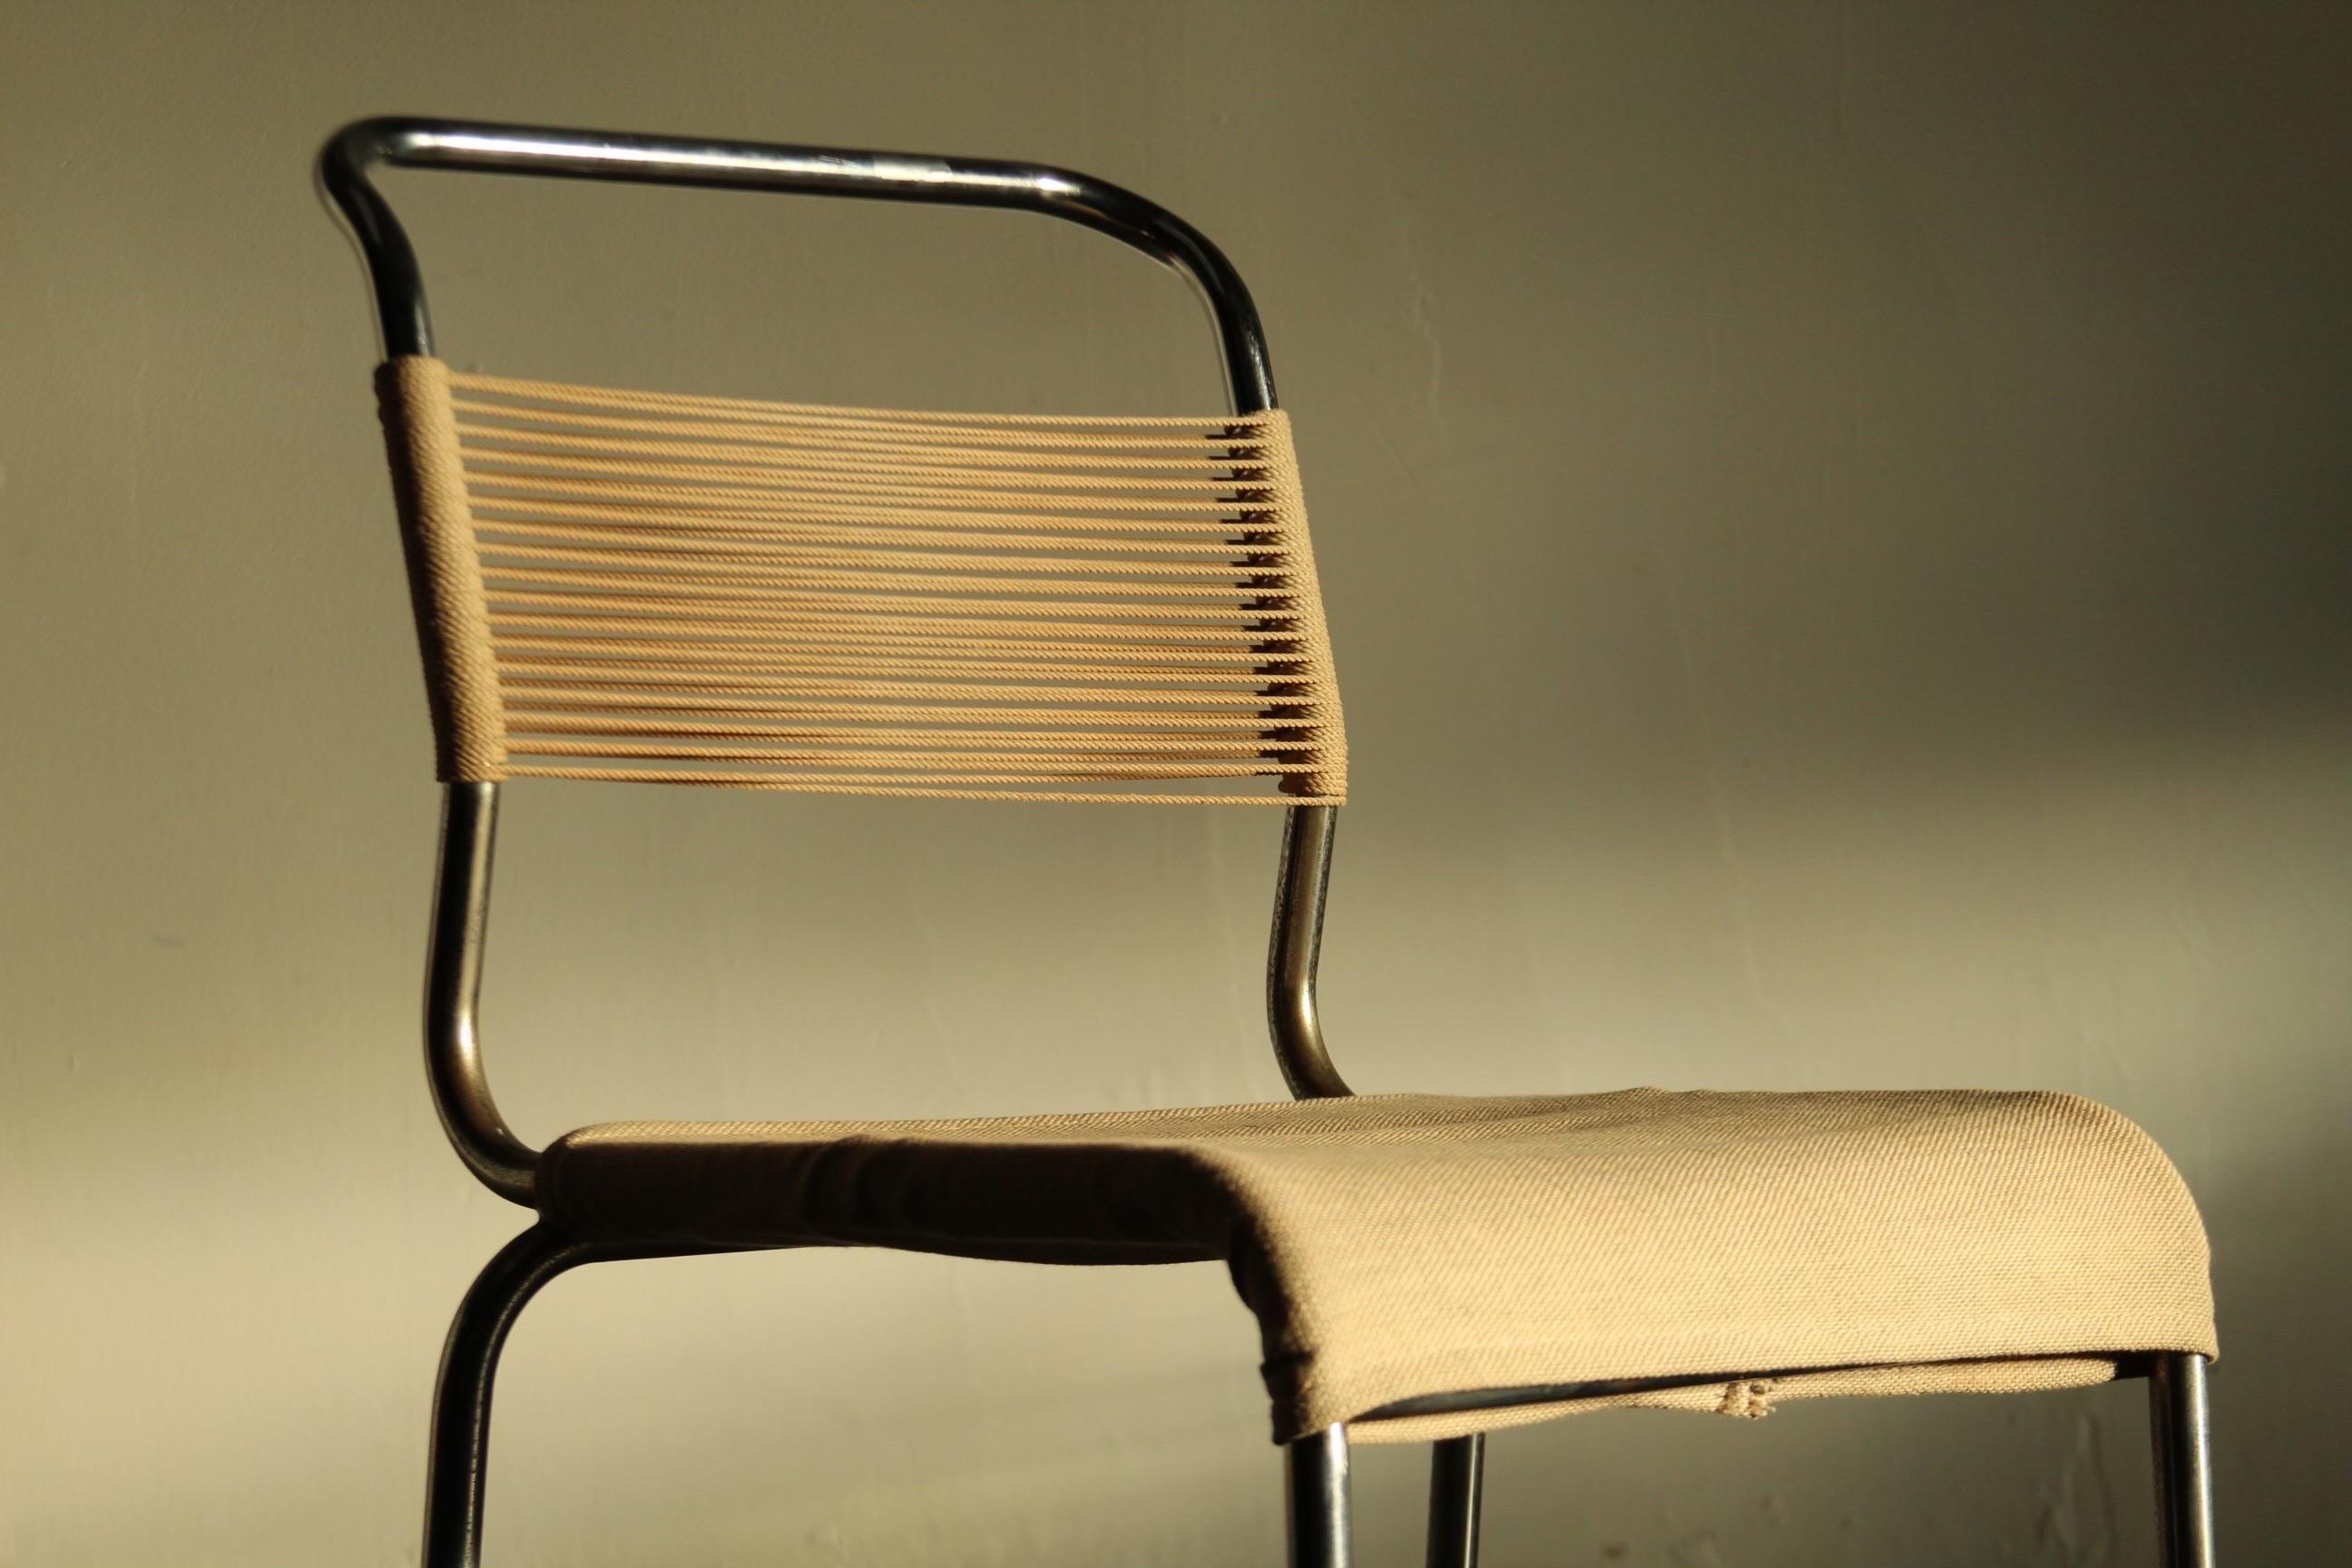 Un magnifique fauteuil à cordes du designer français Andre/One pour Knoll Associates vers 1947. Cet exemplaire ancien et rare, de qualité muséale, est entièrement d'origine et son cadre présente une patine absolument stupéfiante. La Corde du dos est